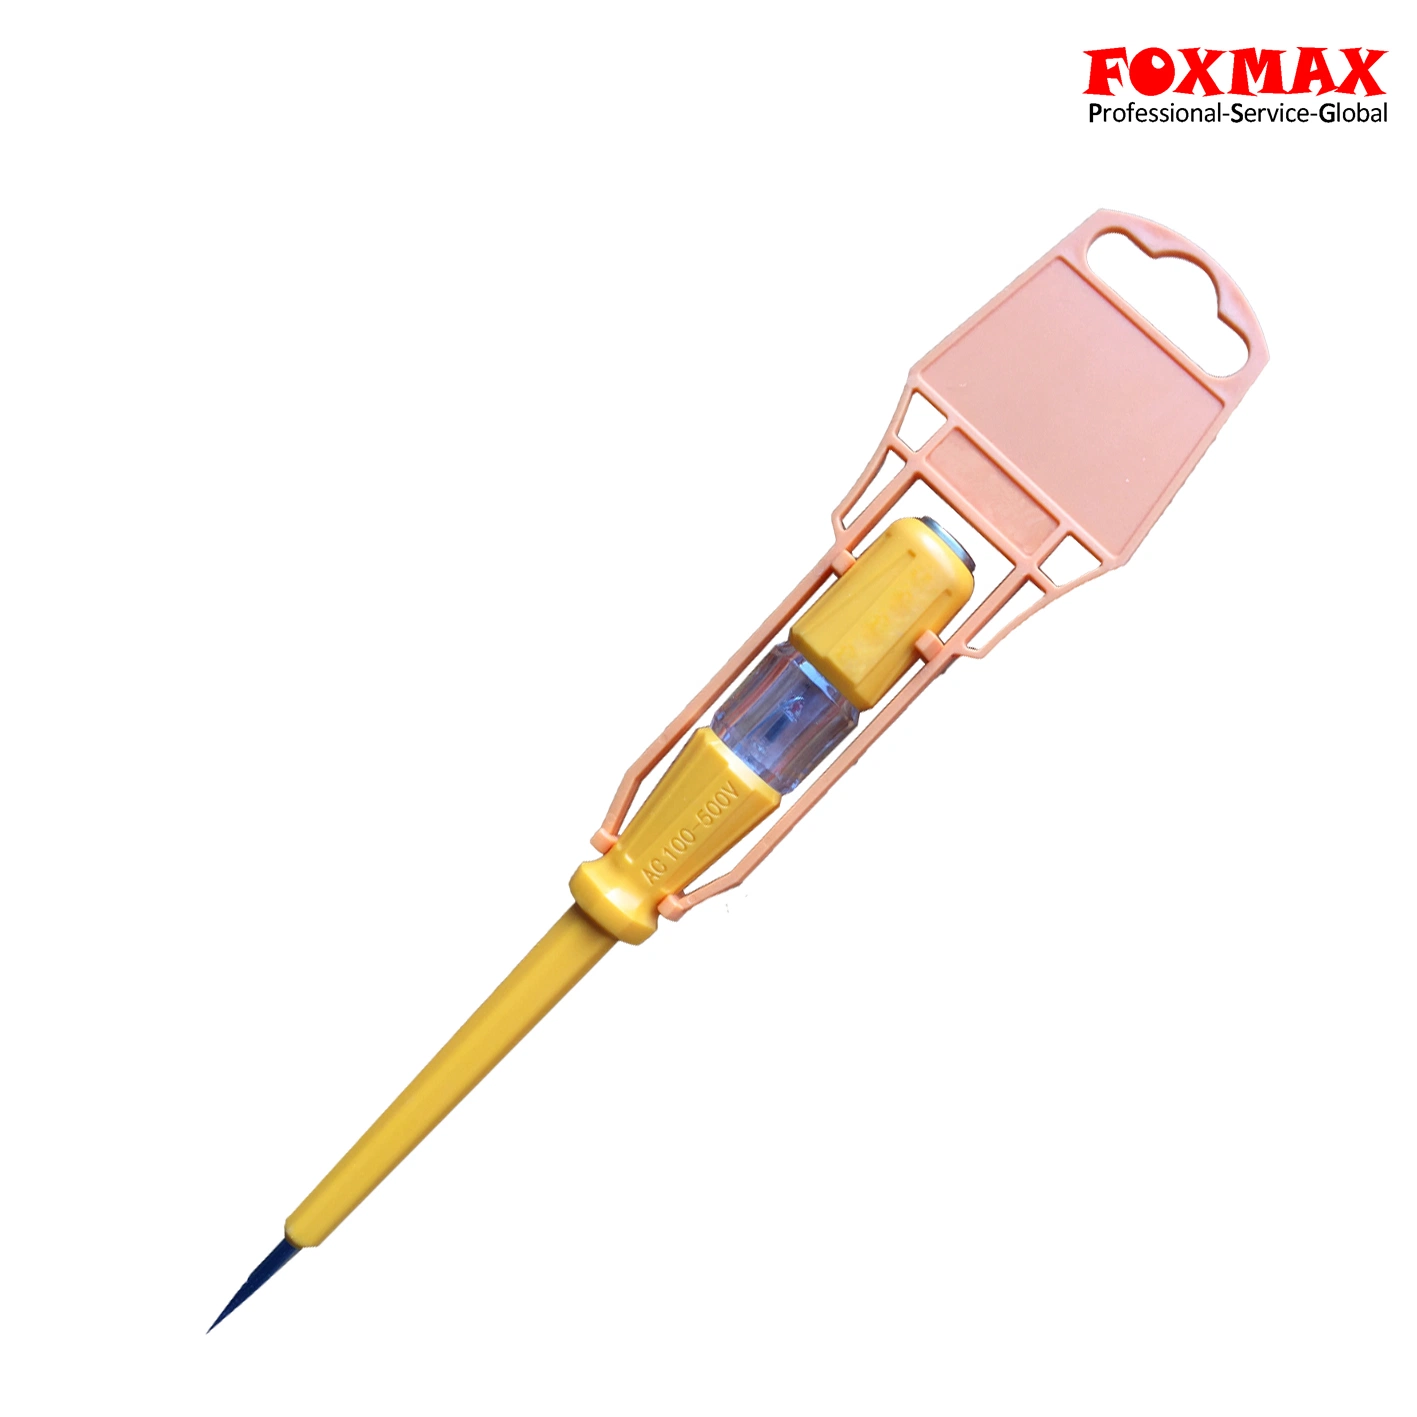 190мм профессиональный тест карандаш с плоским лезвием тестера напряжения пера (FXT-10)